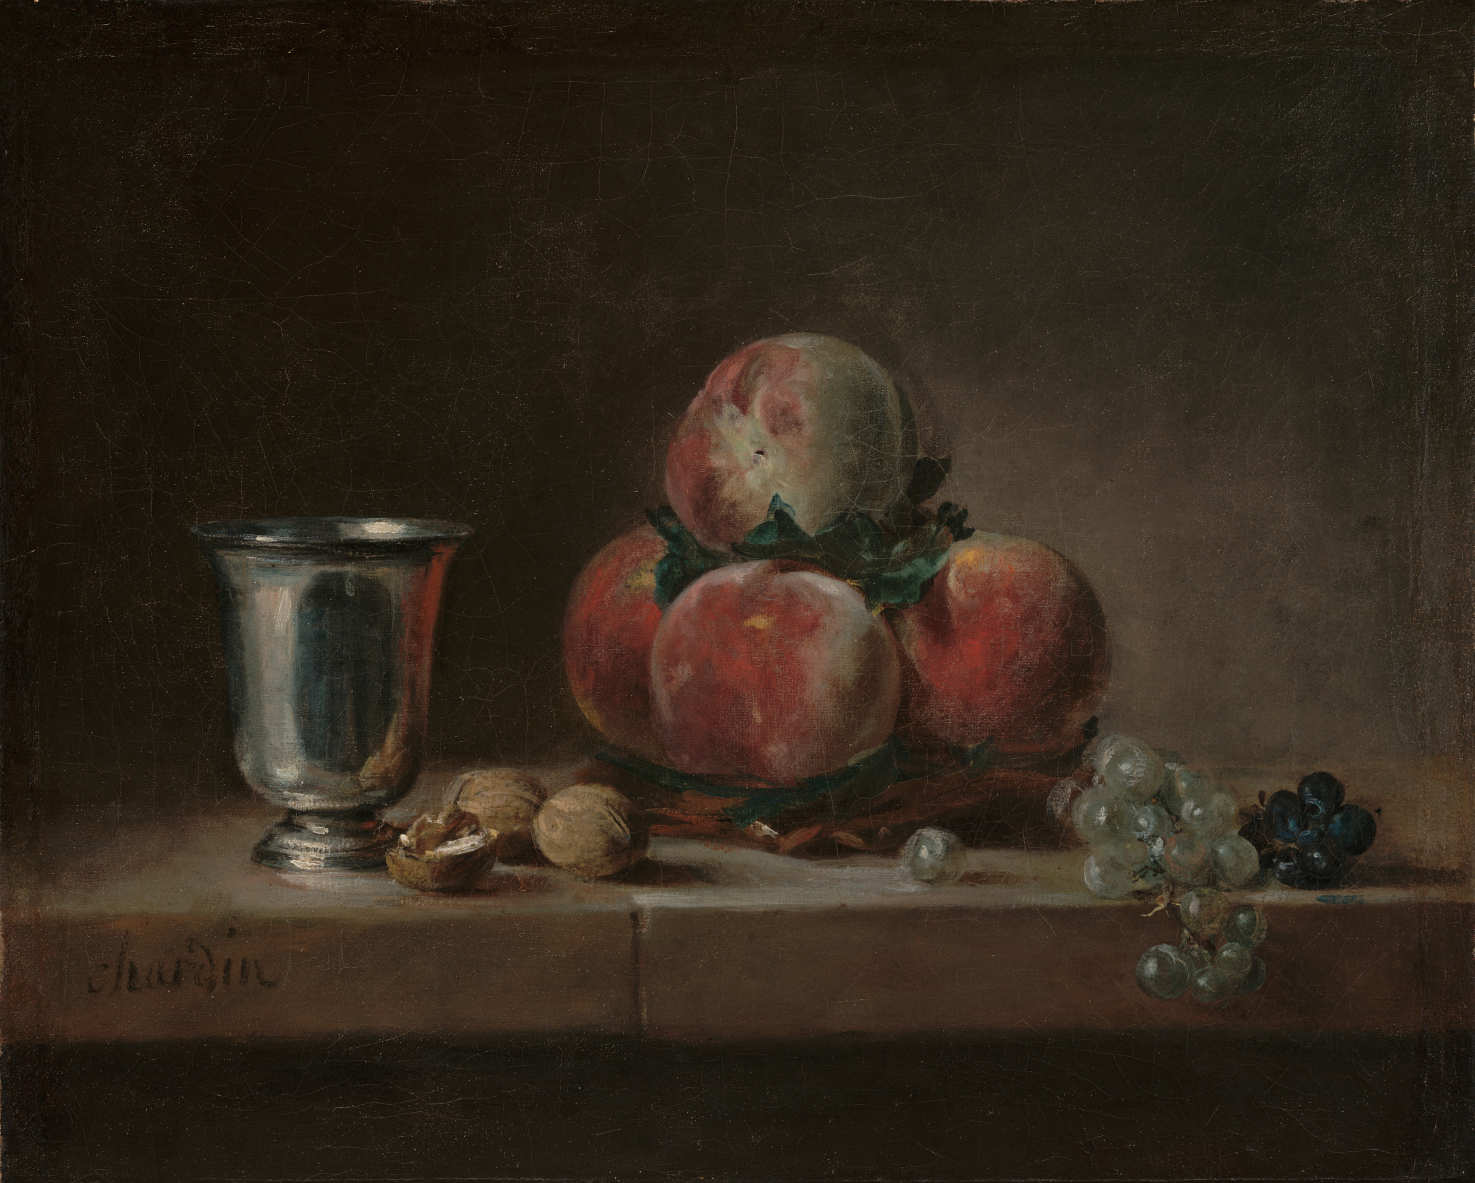 Jean Siméon Chardin, Stillleben mit Pfirsichen, einem silbernen Kelch, Weintrauben und Walnüssen, um 1759/60, Öl auf Leinwand, 38.1 × 46.7 cm (The J. Paul Getty Museum)